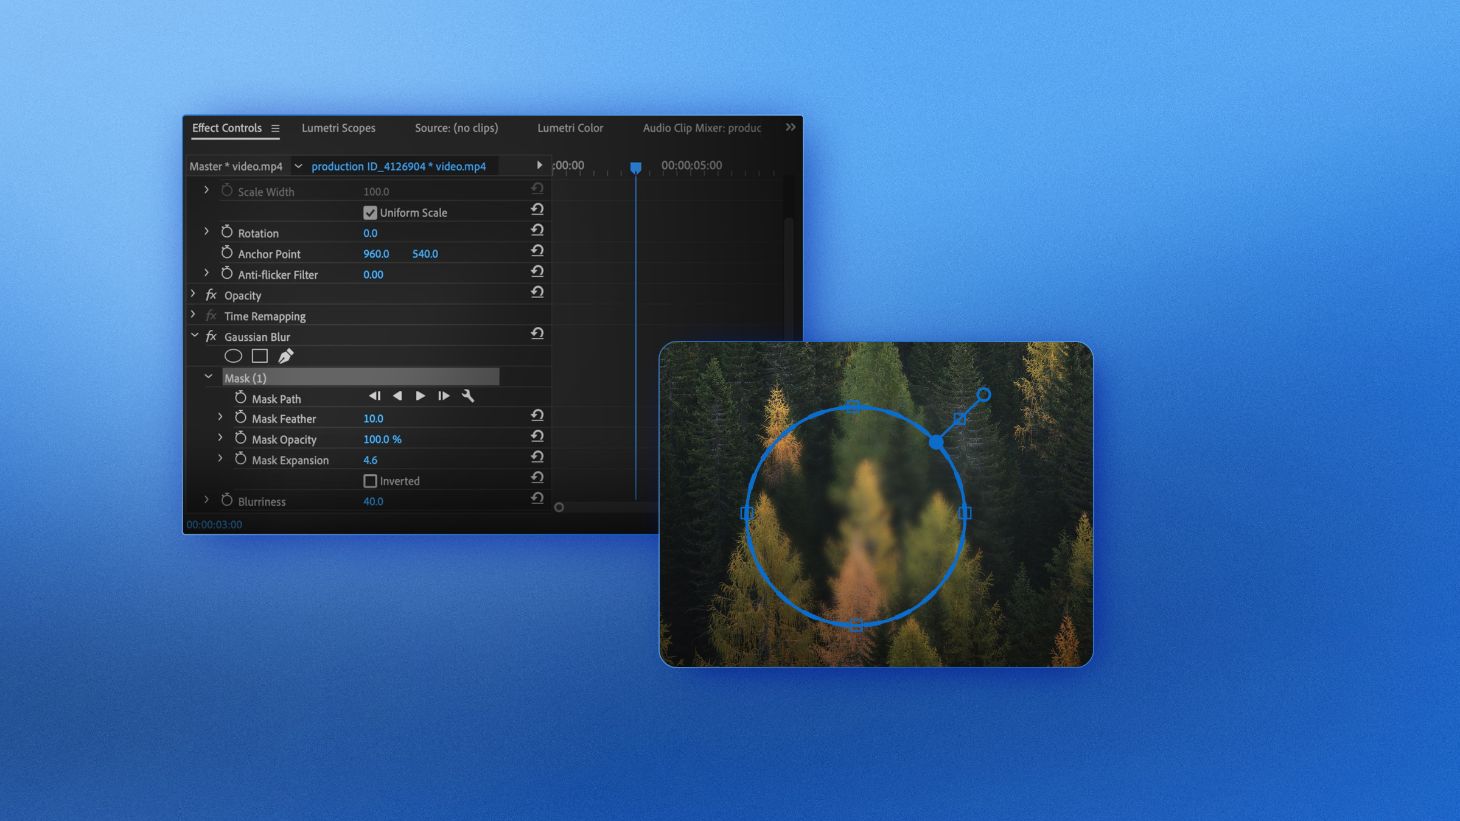 Hiệu ứng Gaussian Blur trong Premiere Pro sẽ khiến cho bức ảnh của bạn trở nên vô cùng độc đáo và ấn tượng. Với chỉ vài thao tác đơn giản, bạn sẽ có thể tạo ra những hình ảnh độc đáo với hiệu ứng mờ mịt và nhẹ nhàng. Hãy cùng khám phá và trải nghiệm nhé!